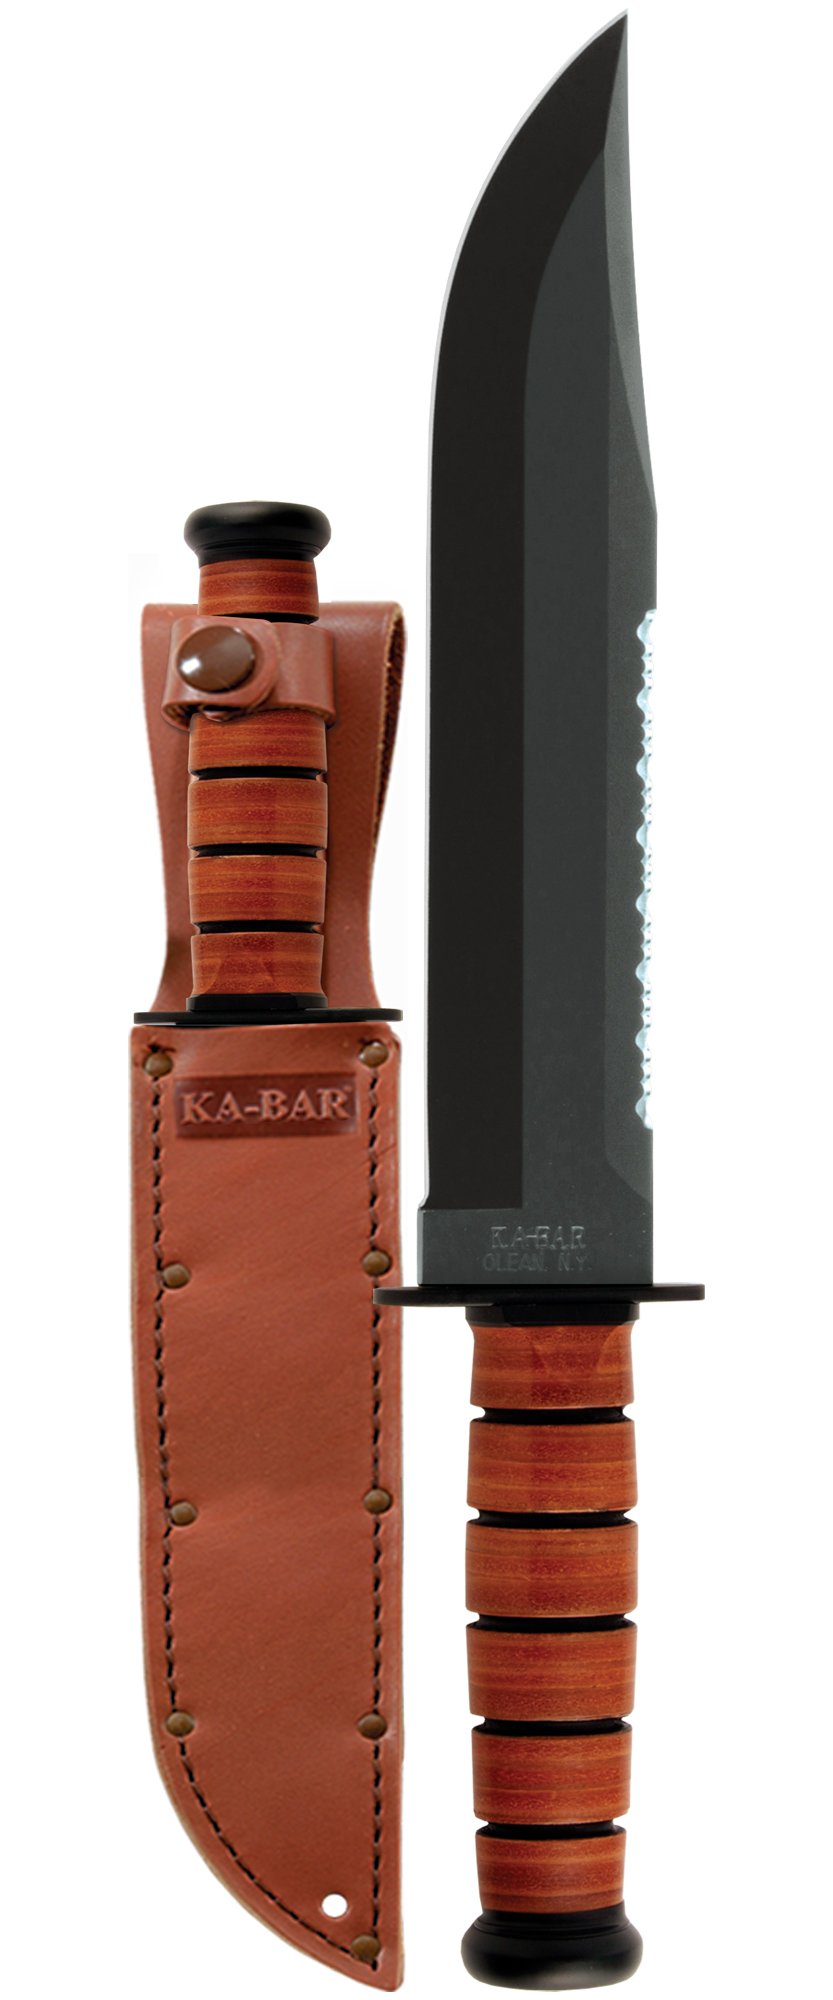 KA-BAR: Big Brother, Leather